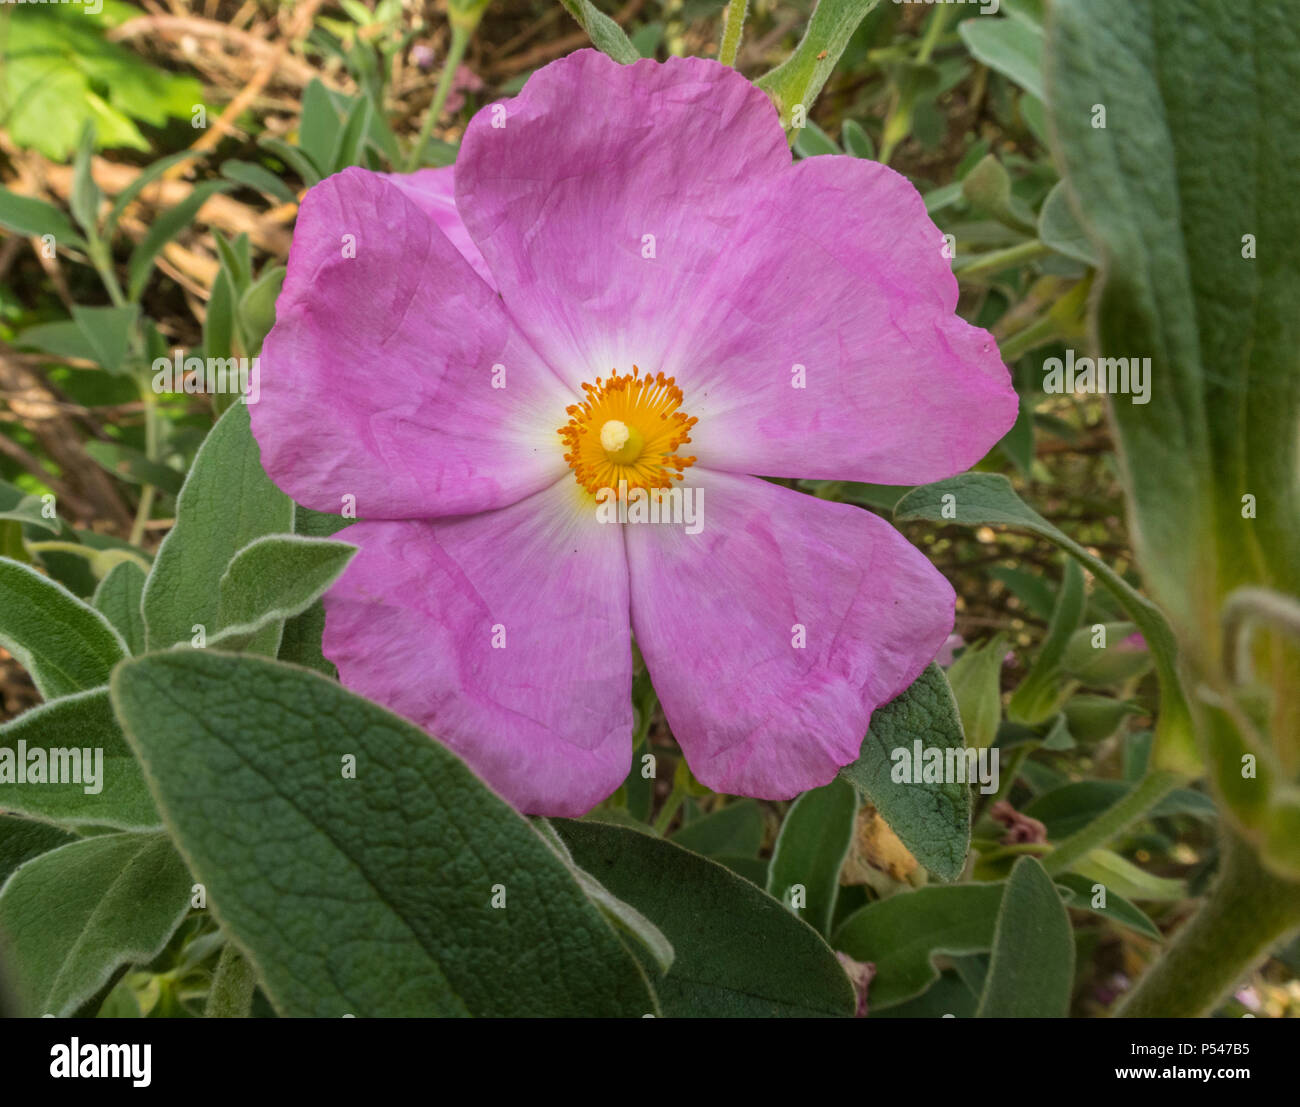 Cistus Silver Pink, Cistus × argenteus, rock rose, in flower in a Devon garden. Stock Photo